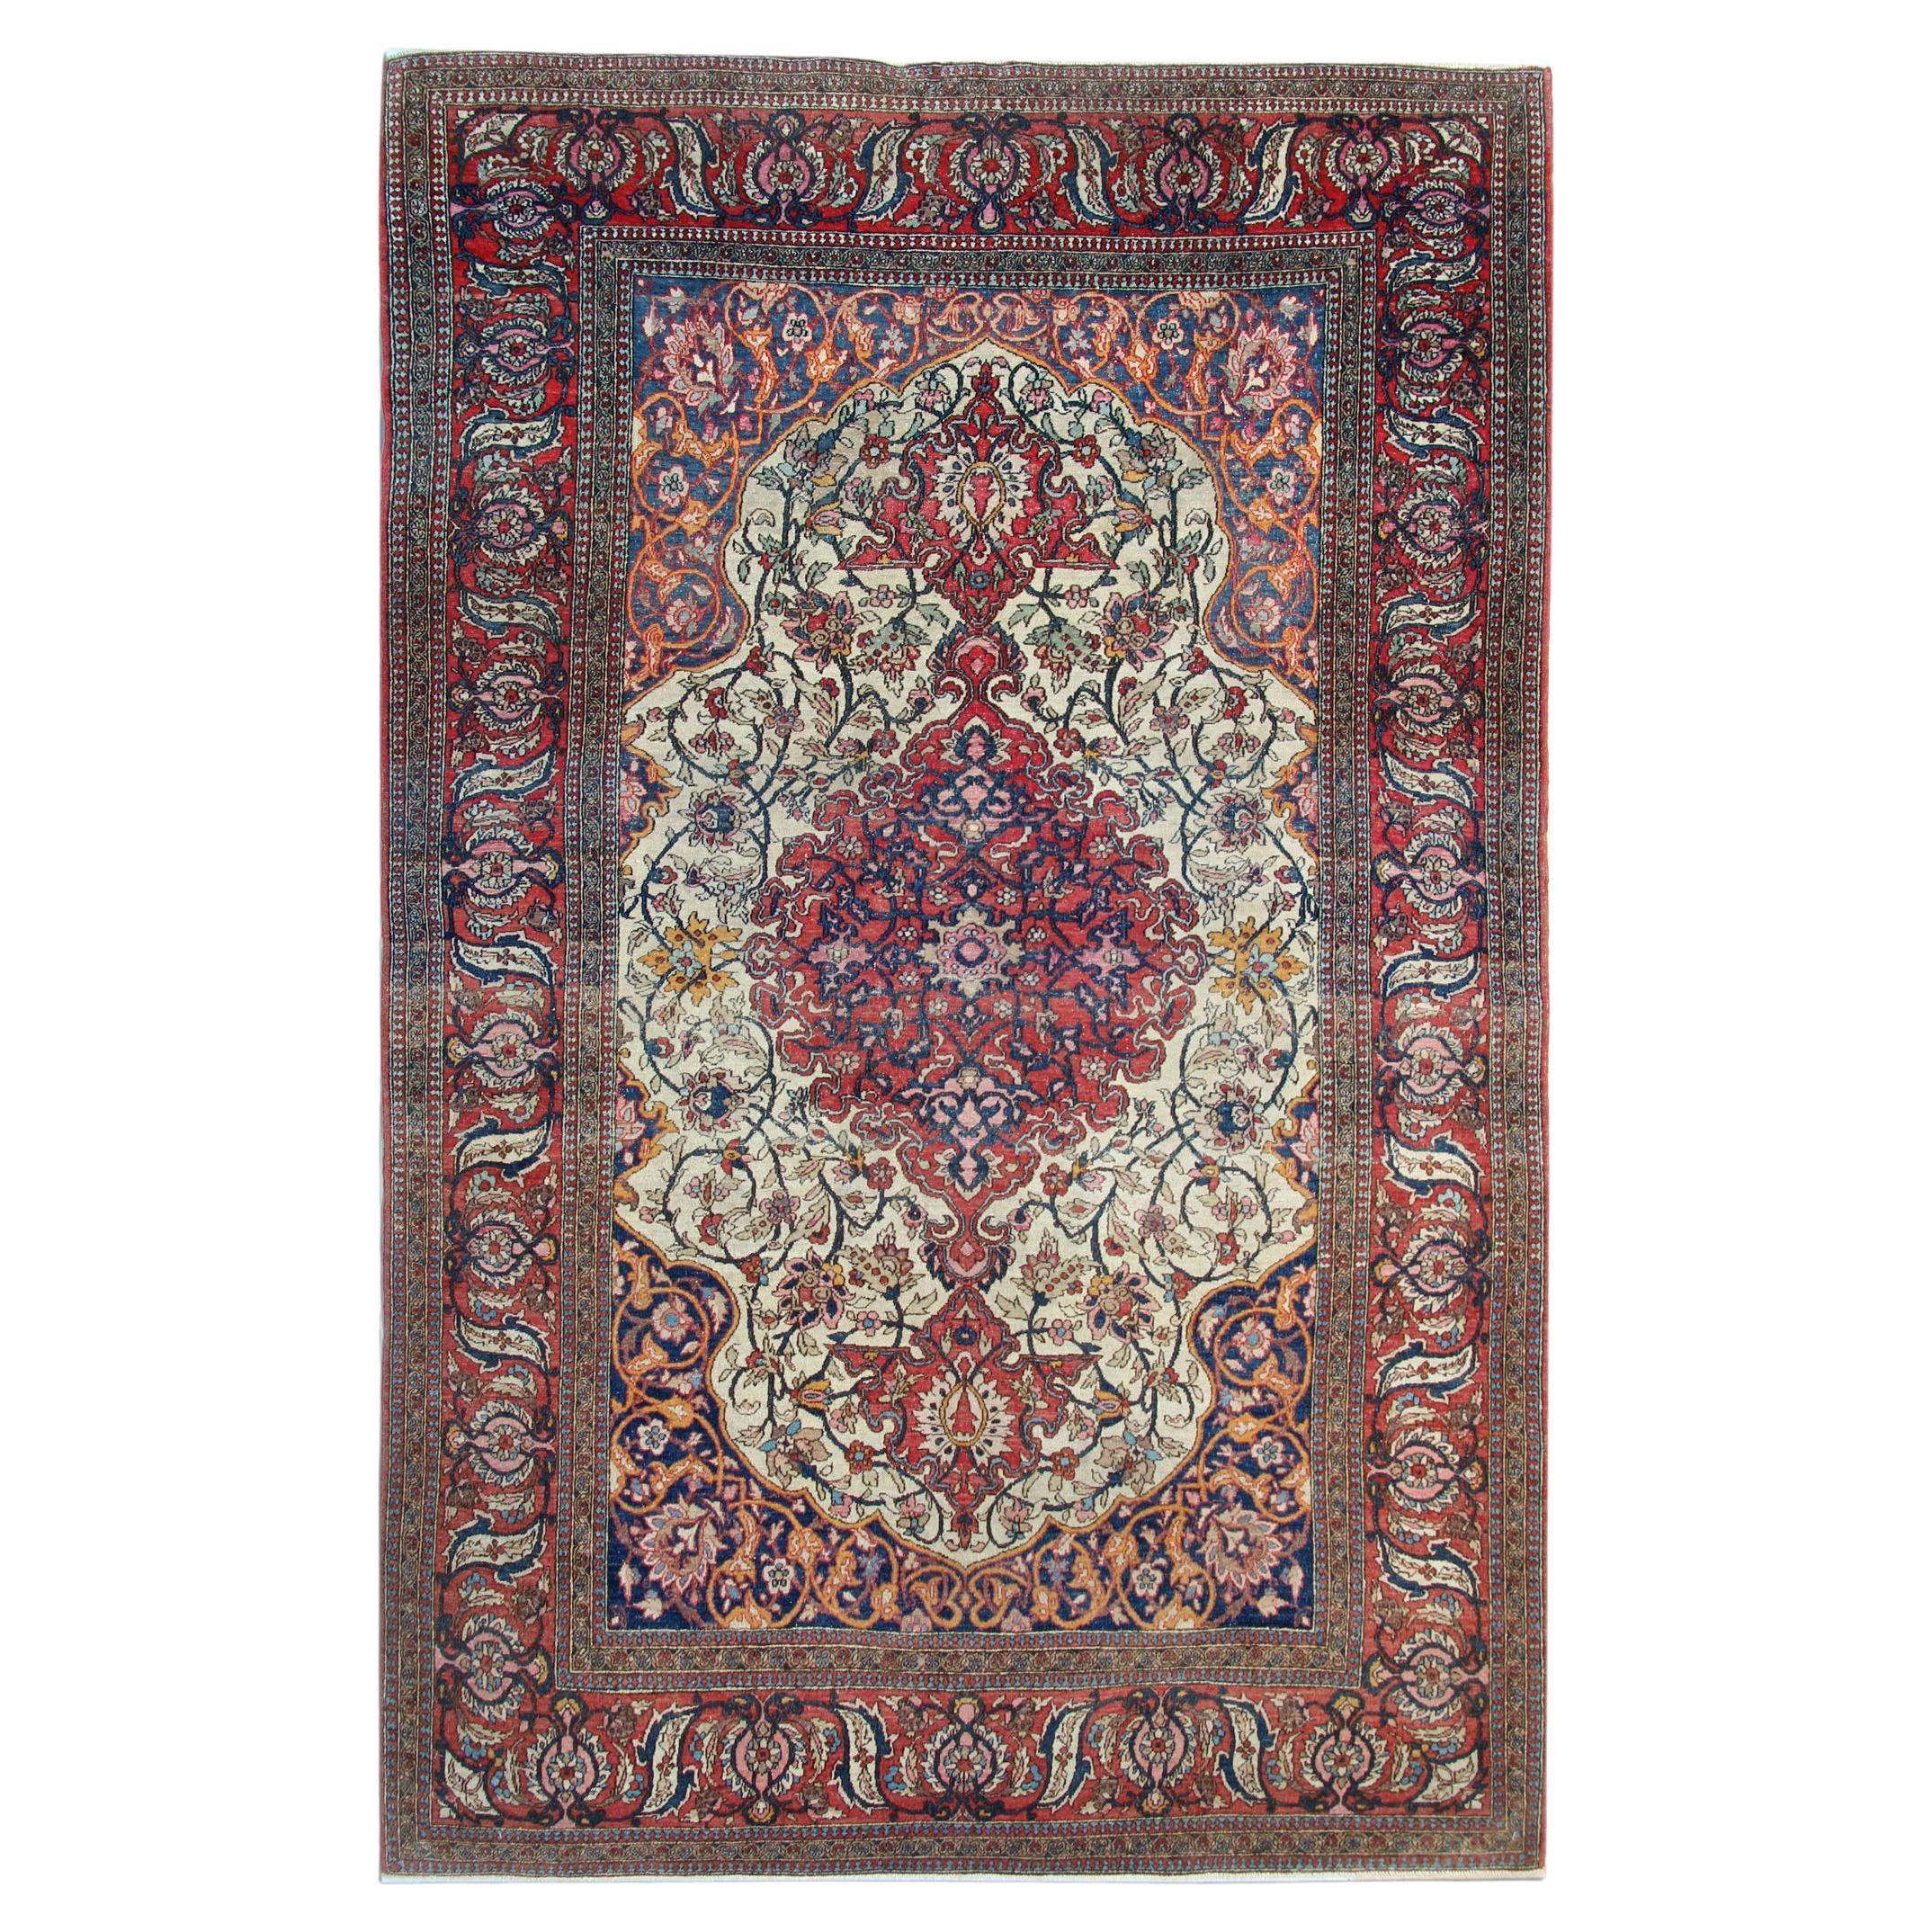 Handgefertigter antiker orientalischer Teppich aus Wolle in Beige, traditioneller Wohnzimmerteppich